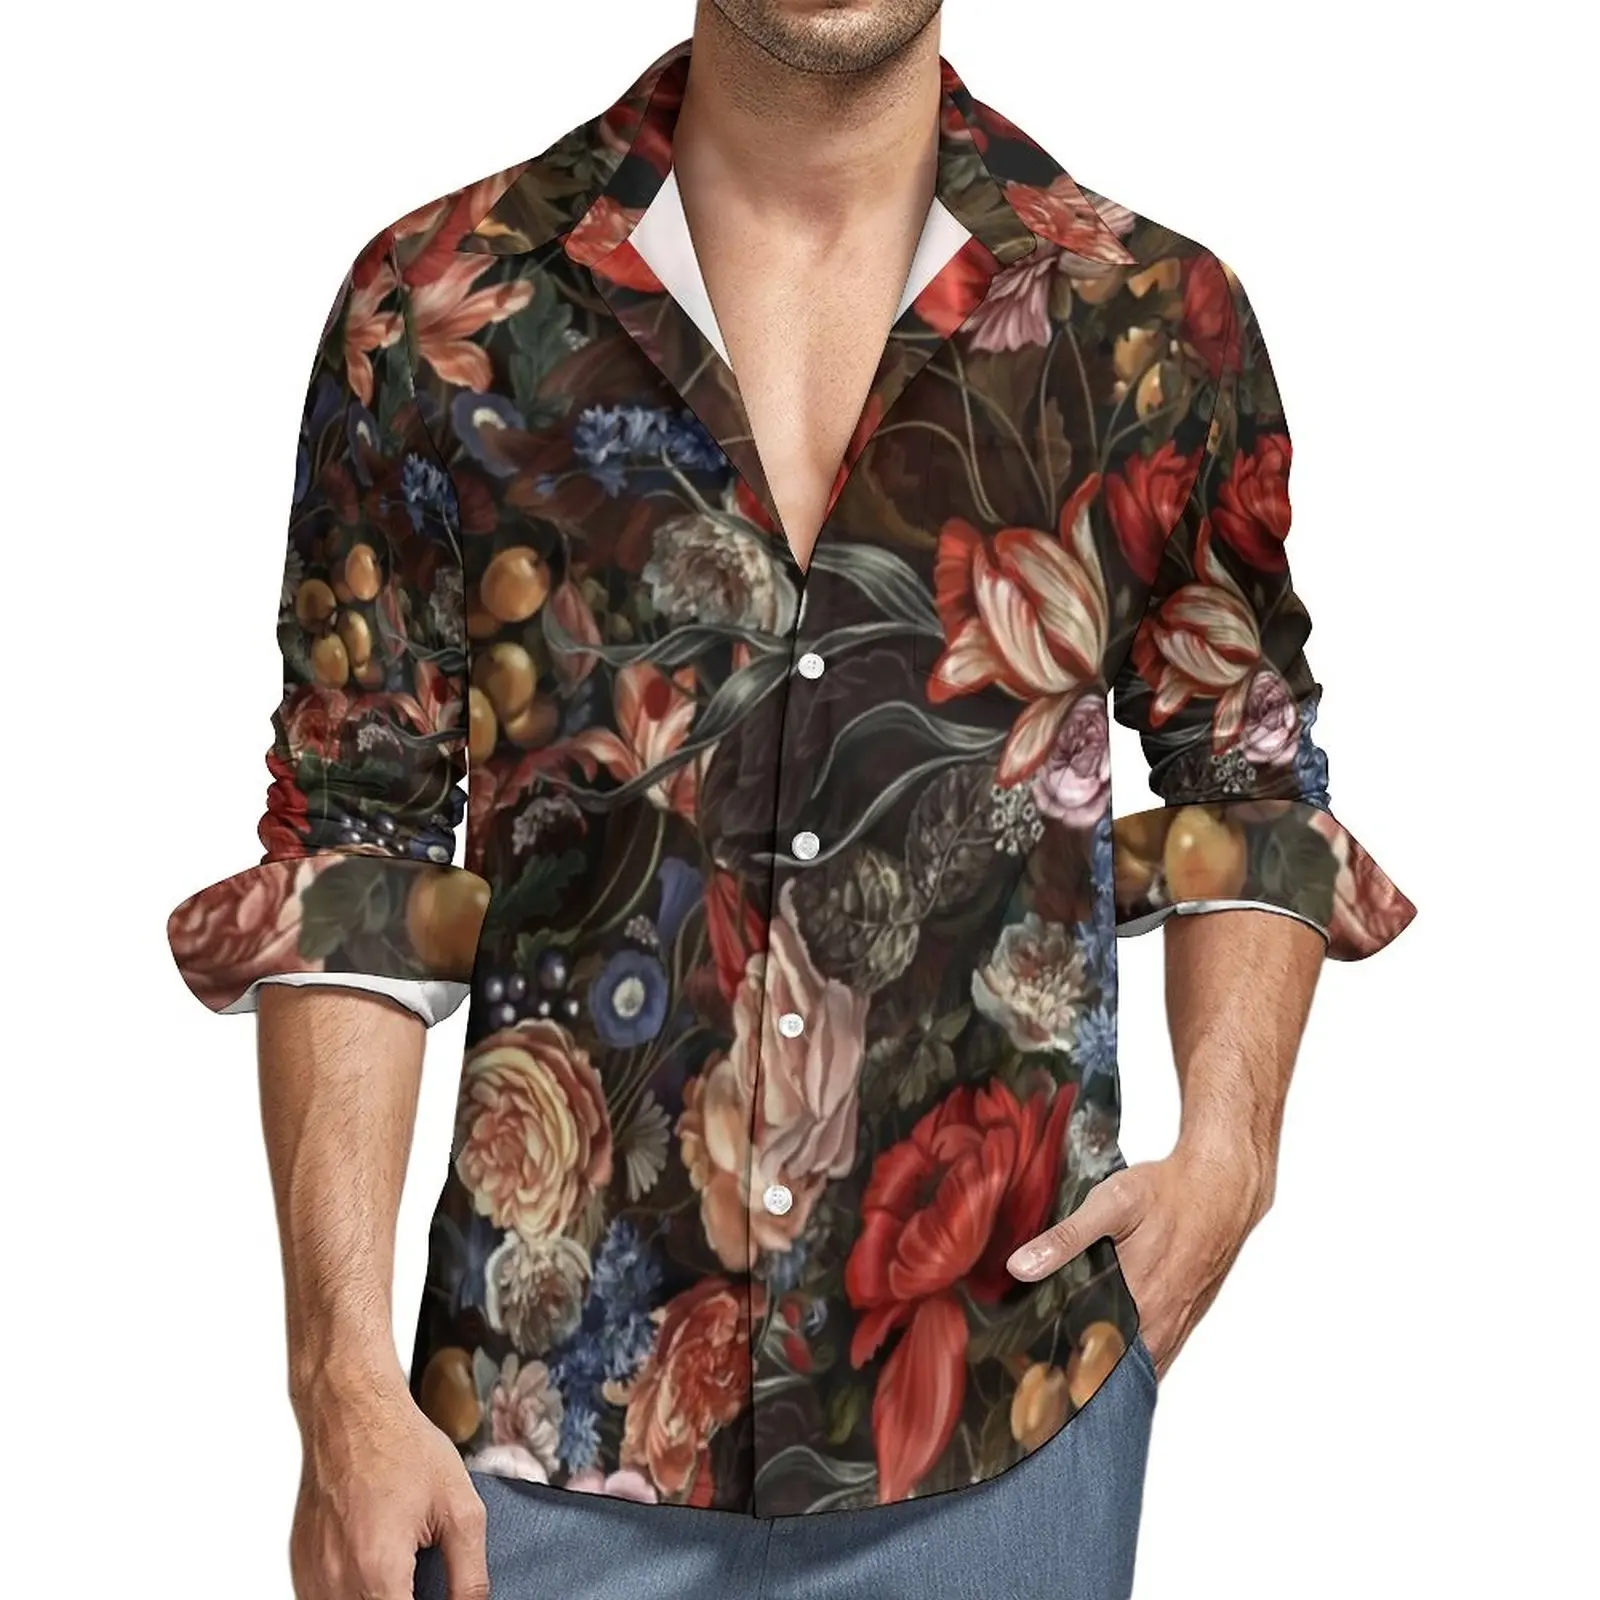 

Винтажная рубашка в стиле барокко с цветочным принтом, цветные повседневные рубашки с длинным рукавом, смешные блузки с графическим принто...